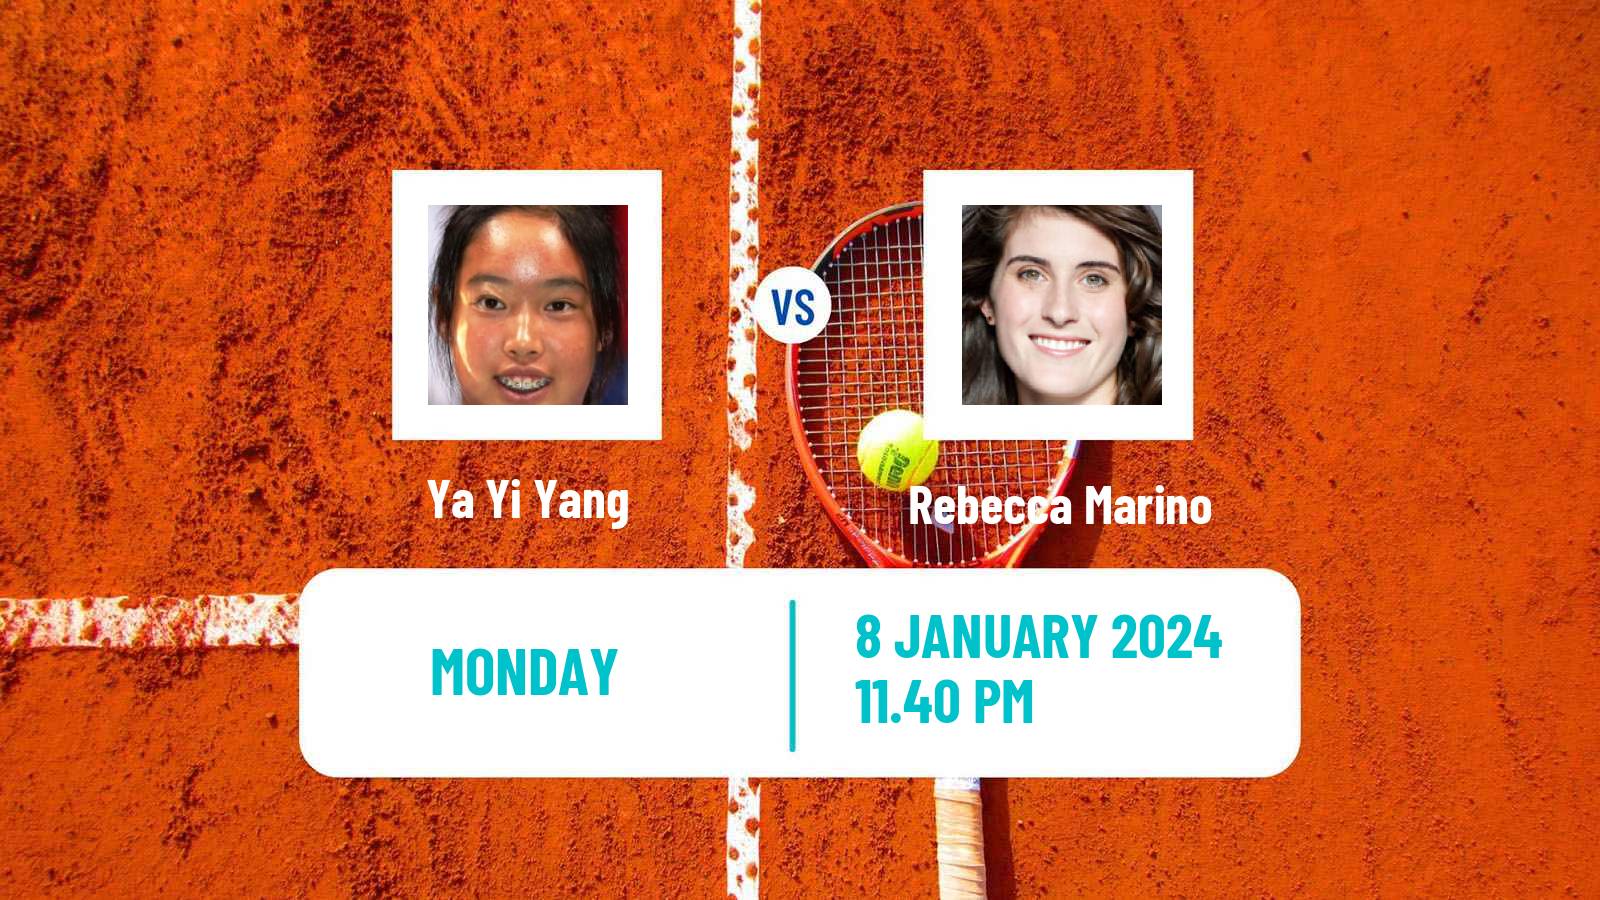 Tennis WTA Australian Open Ya Yi Yang - Rebecca Marino